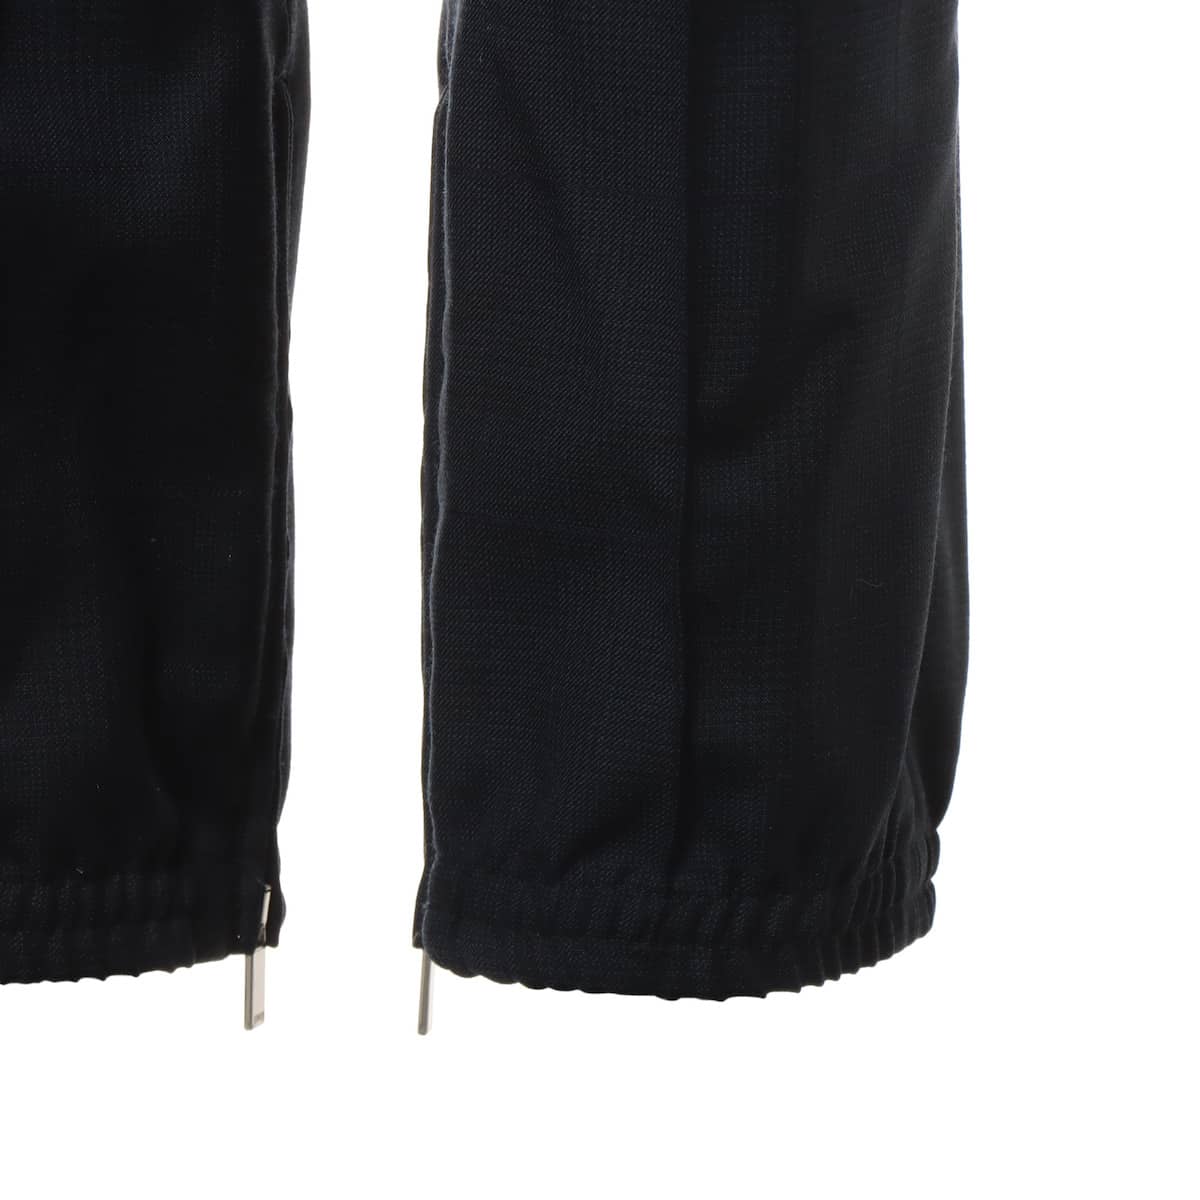 ディオール ウール パンツ 42 メンズ ブラック×ネイビー  裾ジップ ロゴドローコード